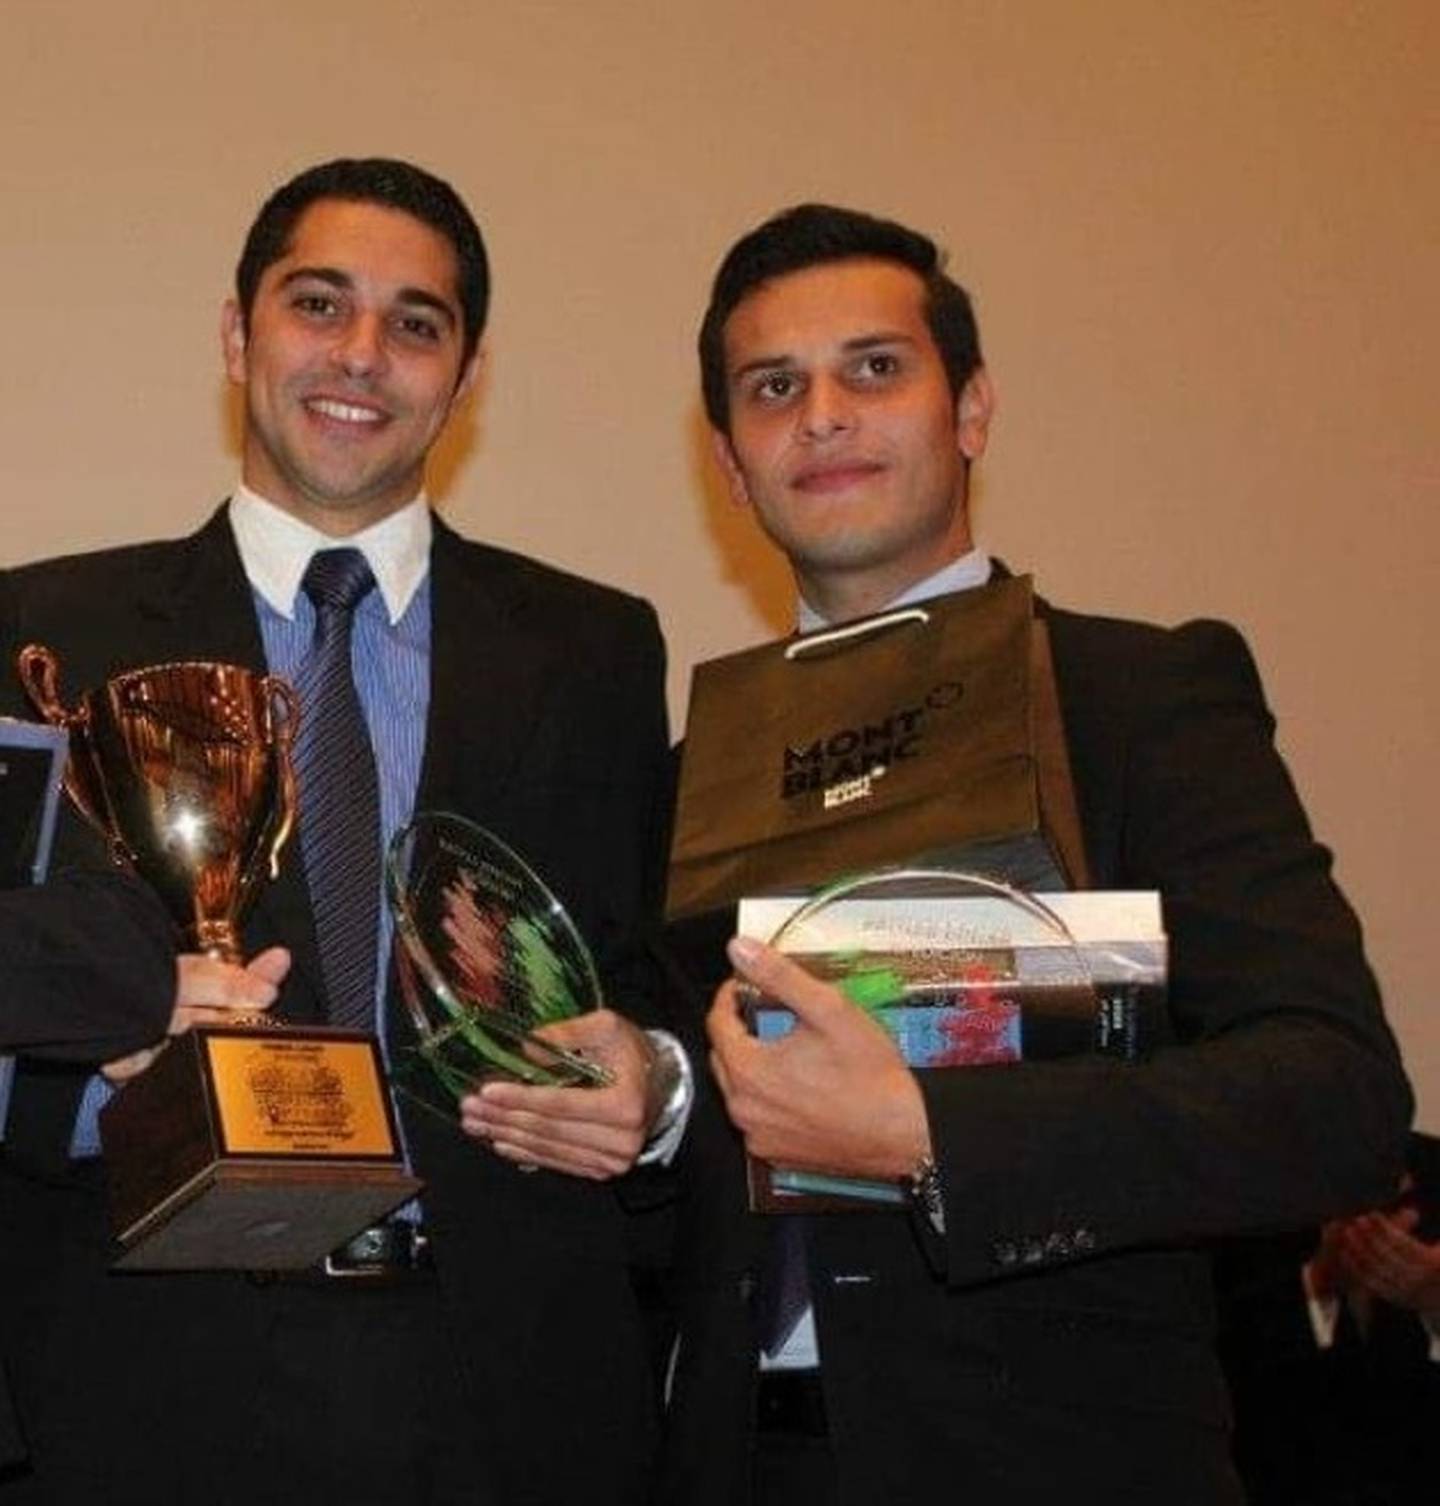 Braulio Venegas, expresidente de Incop; y Francisco Montes Fonseca, en el 2013, tras ganar un concurso internacional de arbitraje comercial en México. Ellos estudiaron juntos Derecho en la UCR.